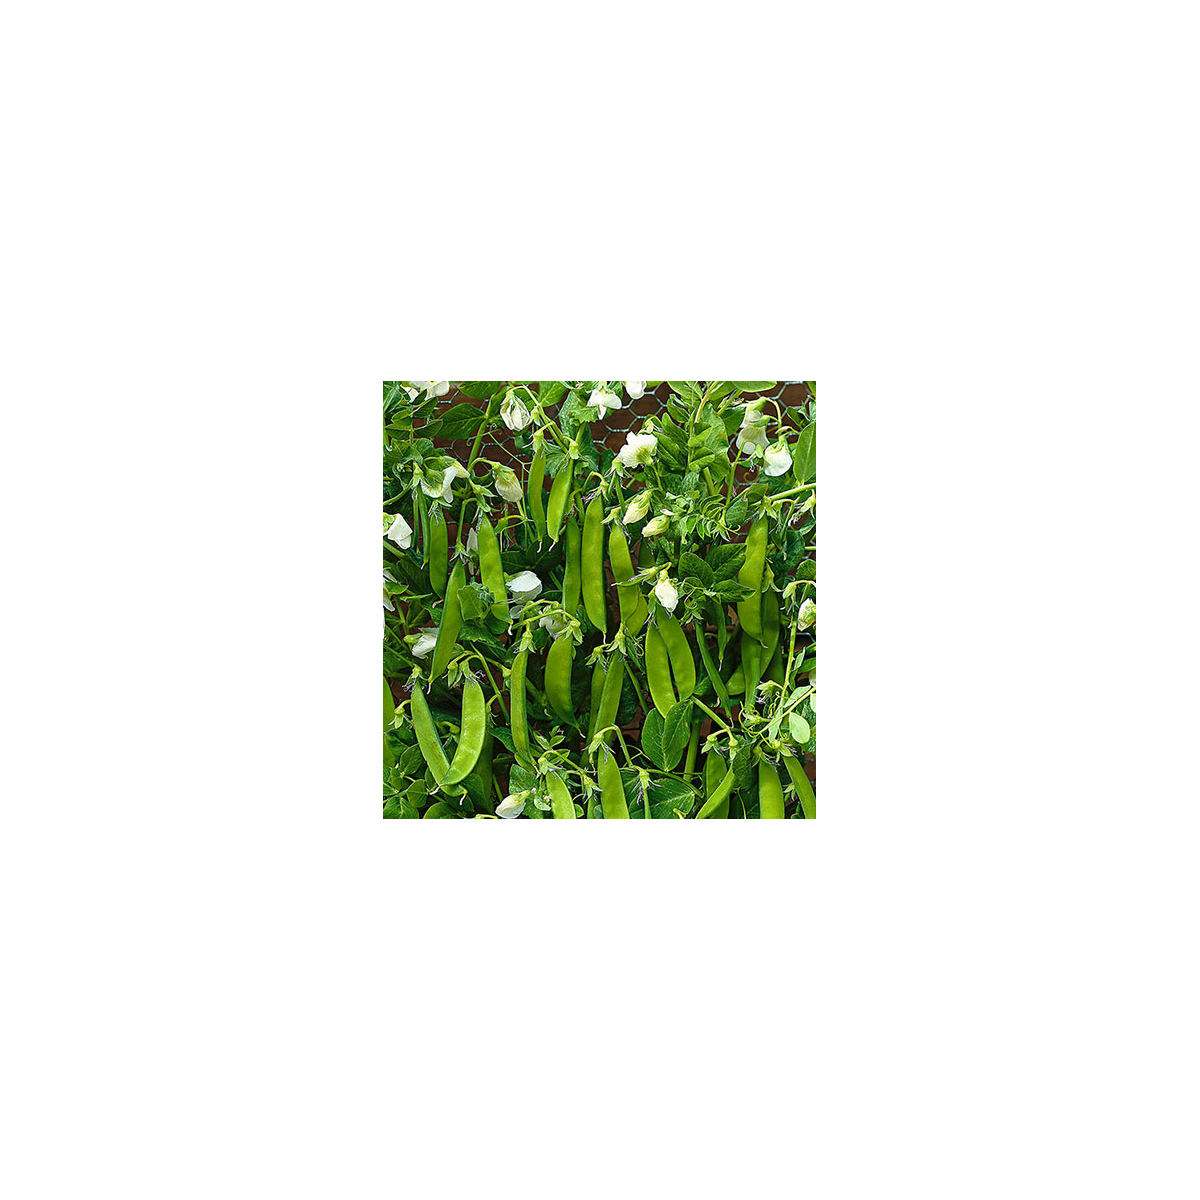 BIO Hrách cukrový Norli - Bio semena - 15 gr - Pisum sativum